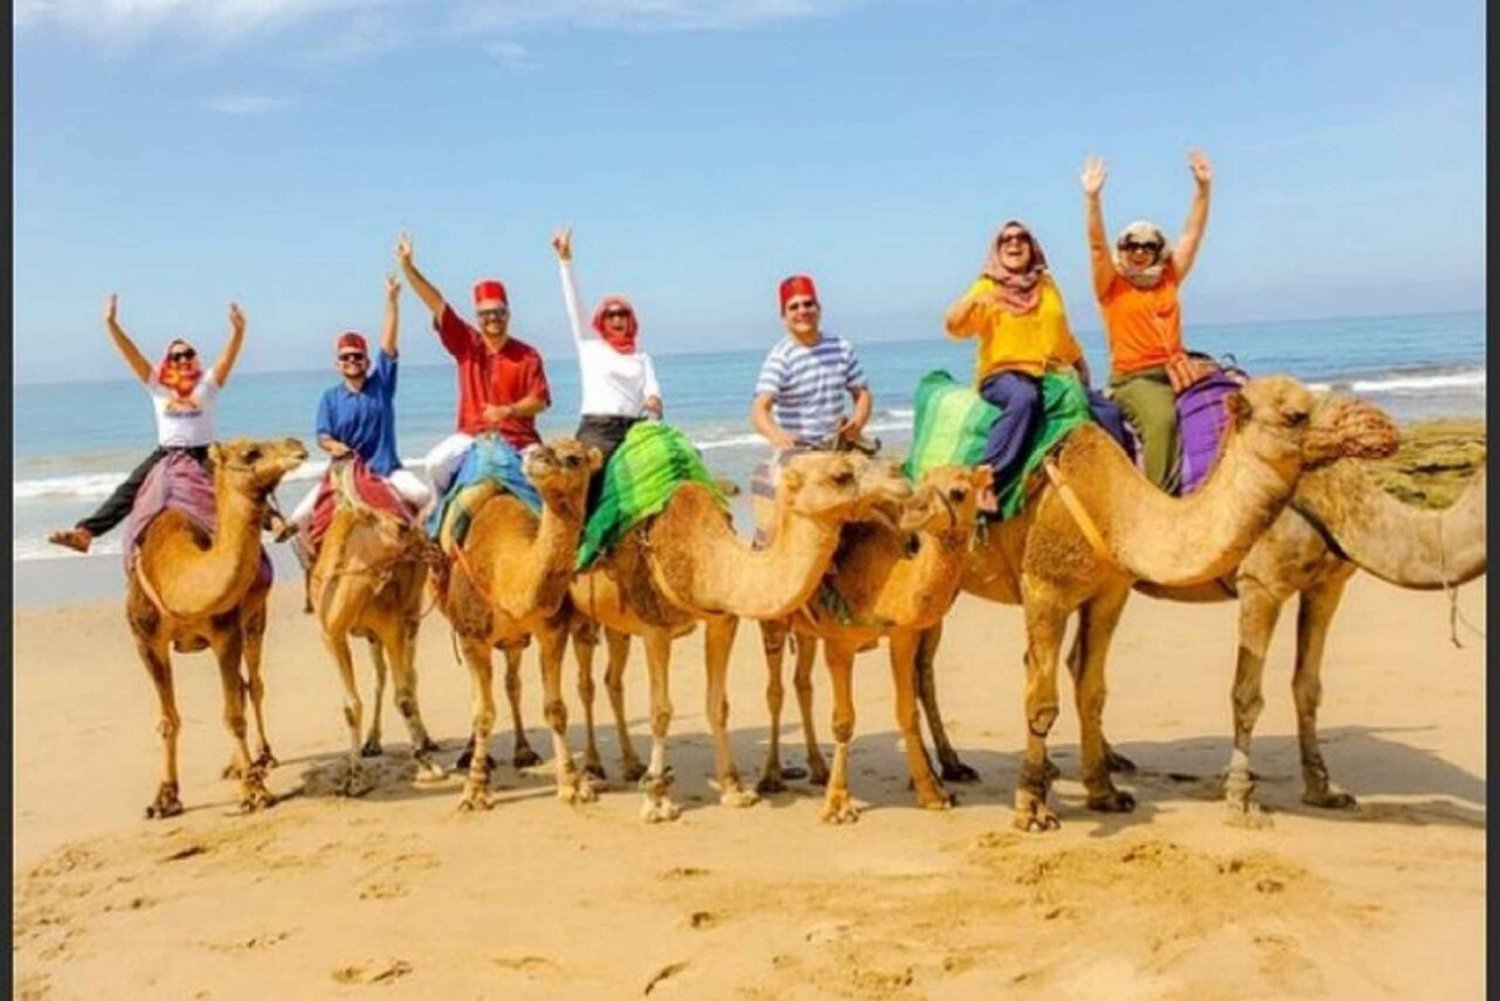 Tour Privado de Tánger desde Marbella incluyendo Camello y Almuerzo